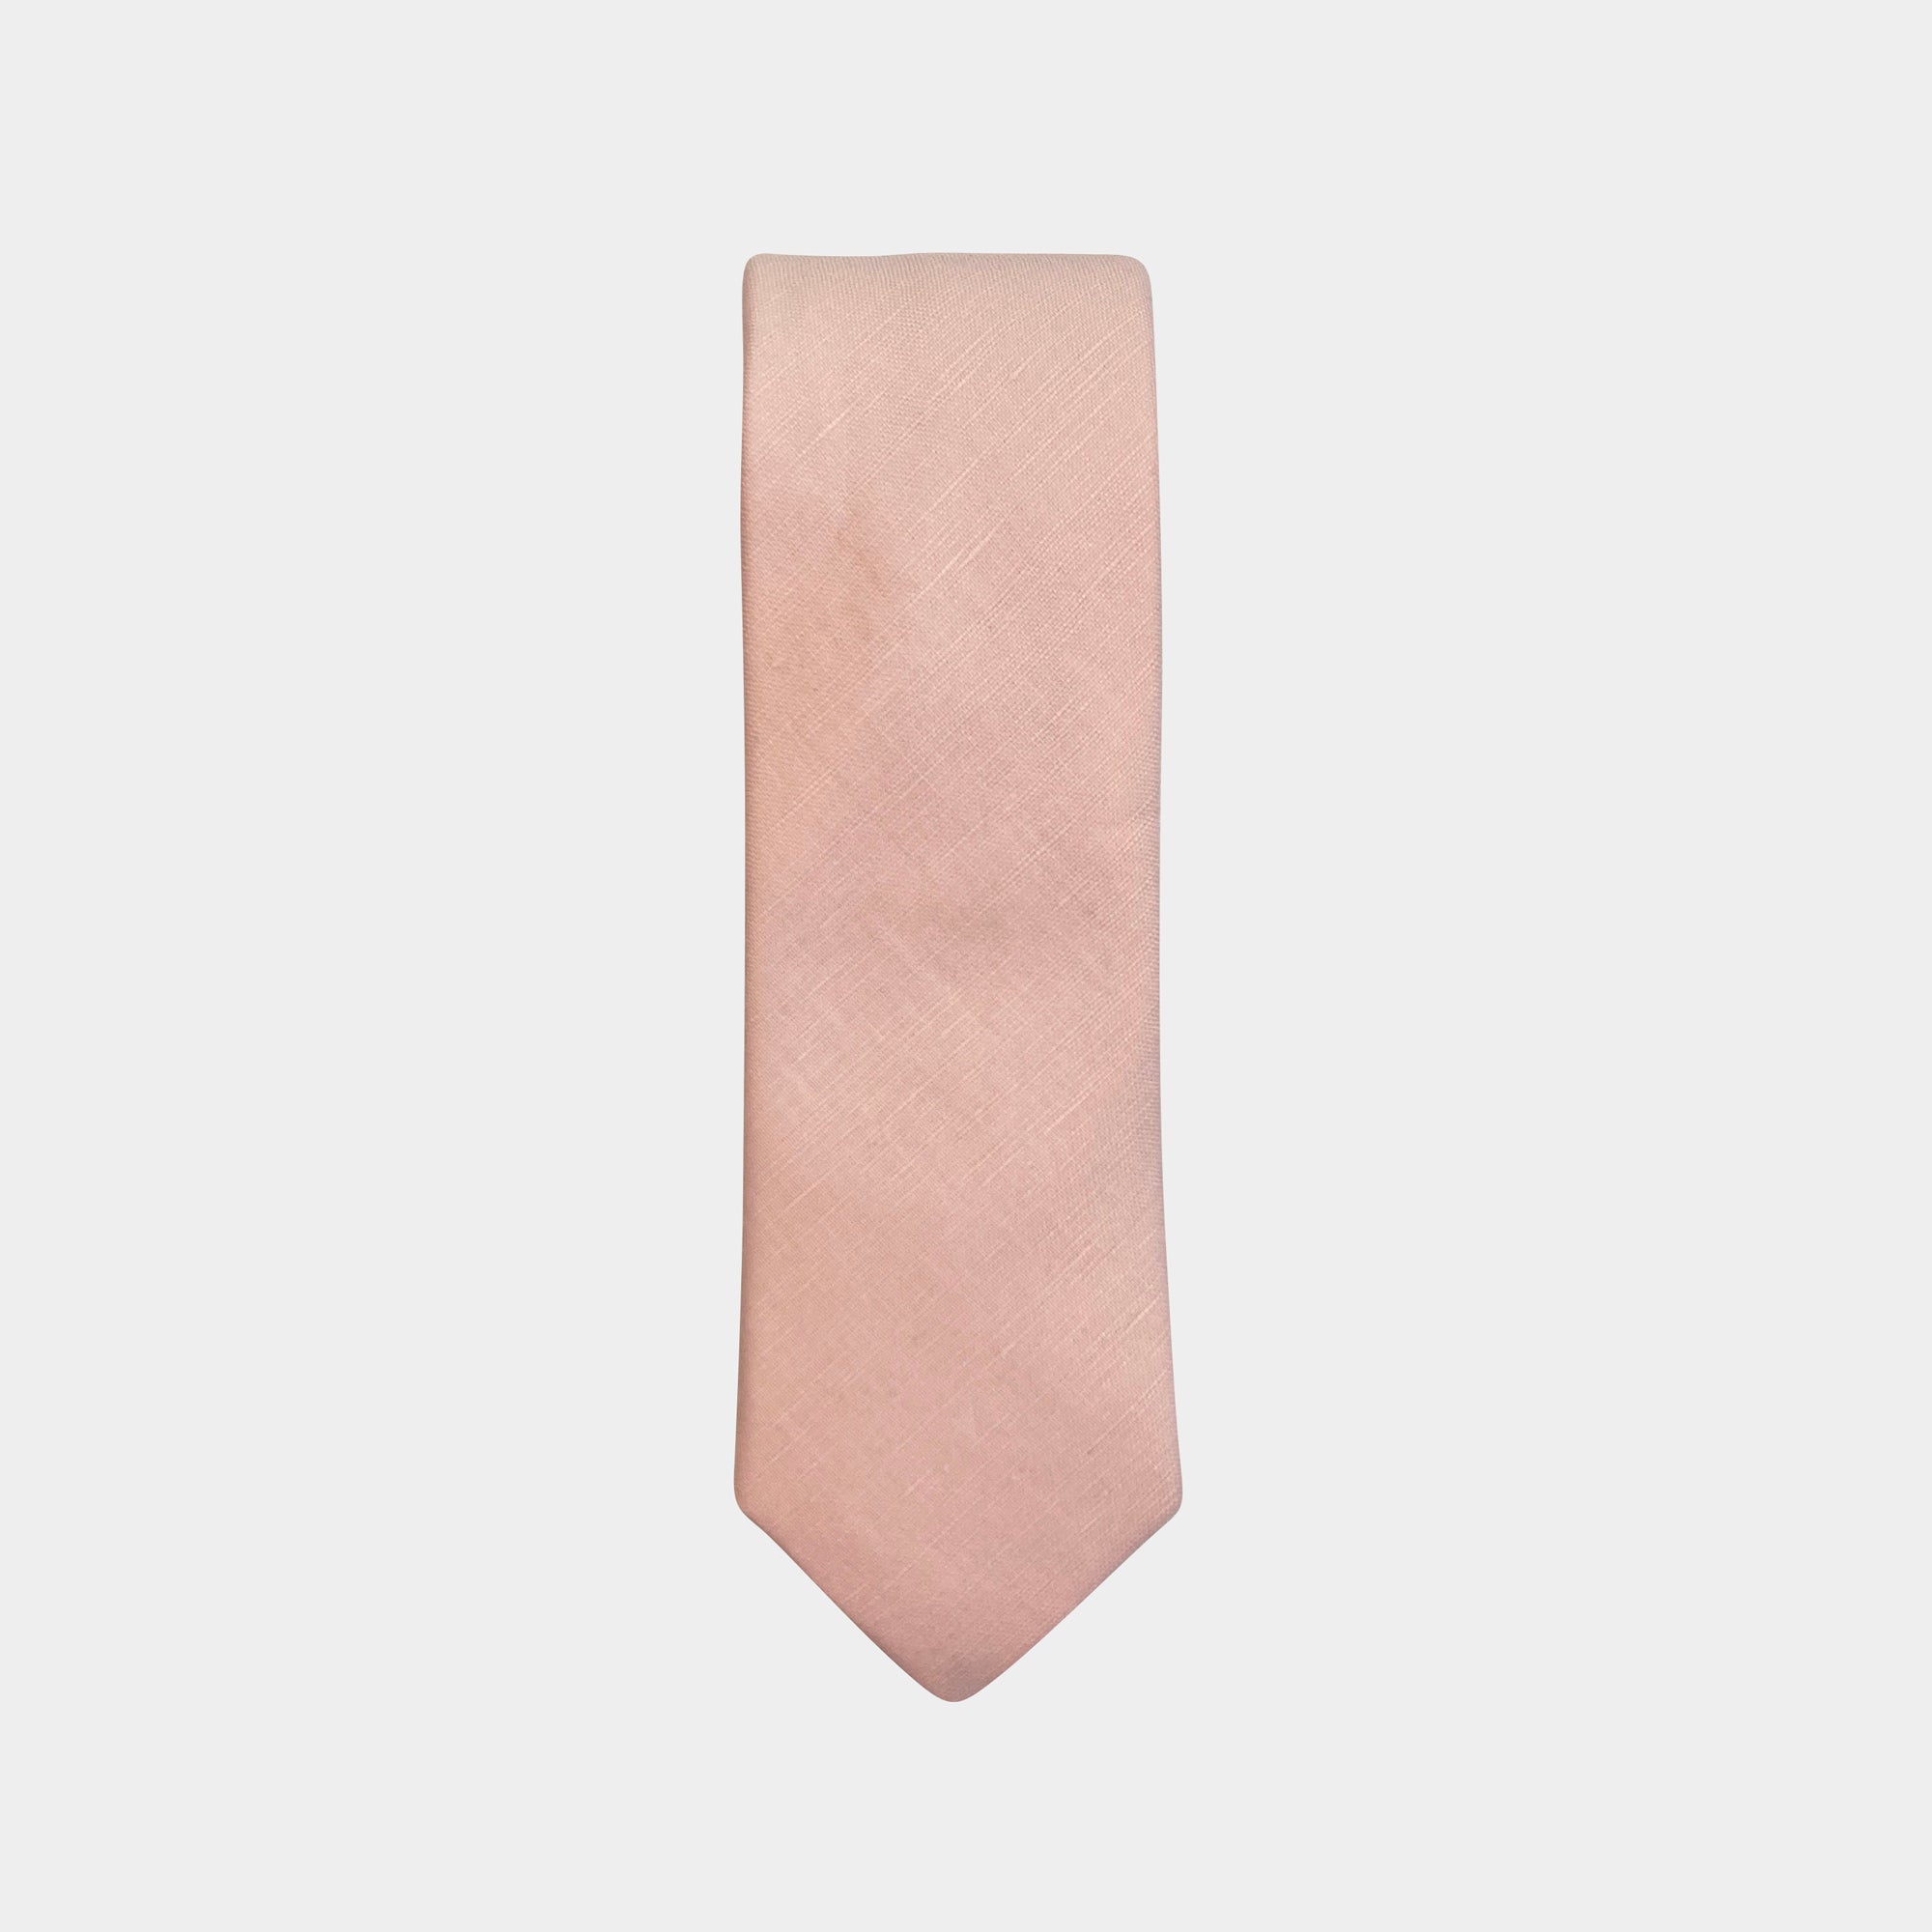 MCLELLAND - Men's Tie